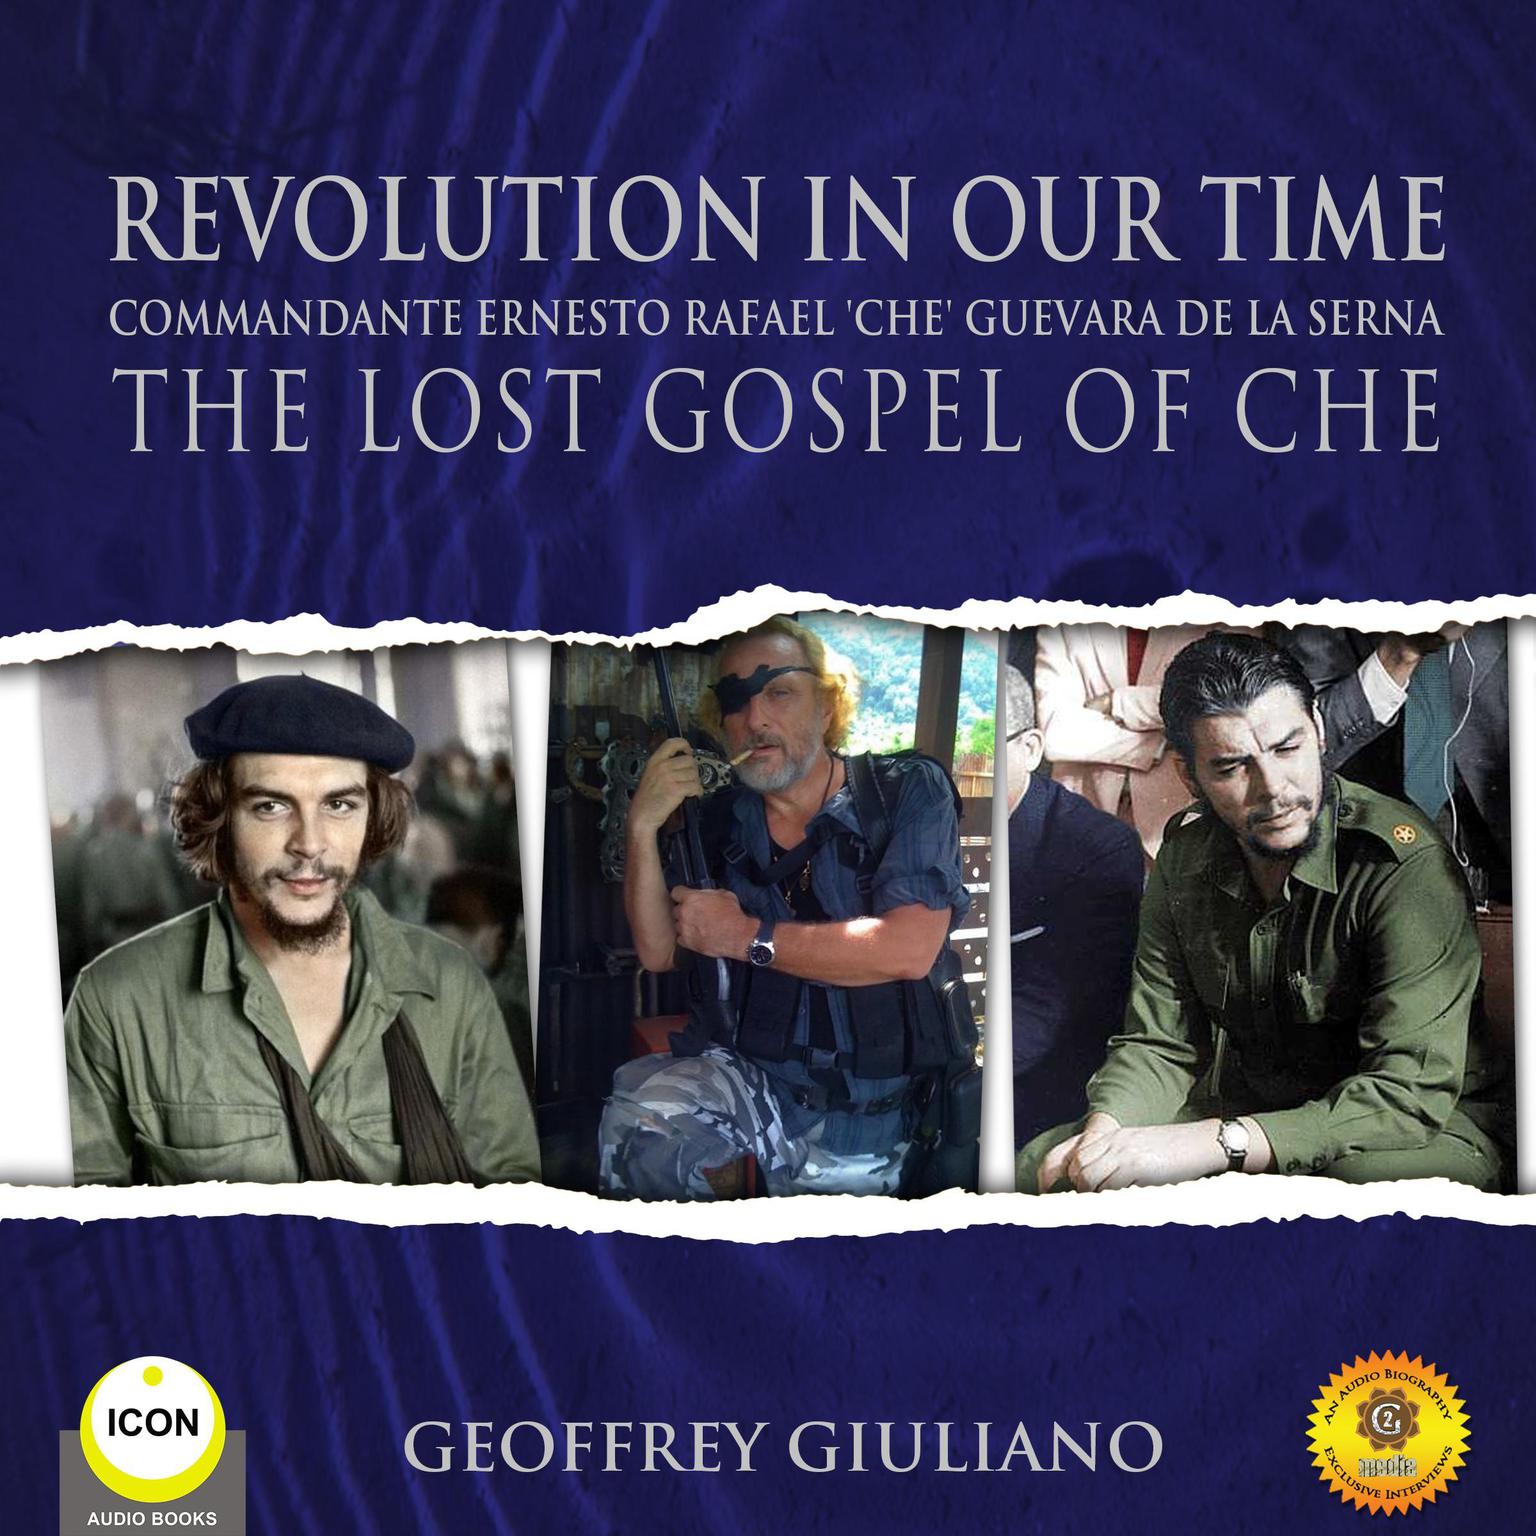 Revolution In Our Time Commandante Ernesto Rafael Che Guevara De La Serna - The Lost Gospel Of Che Audiobook, by Geoffrey Giuliano